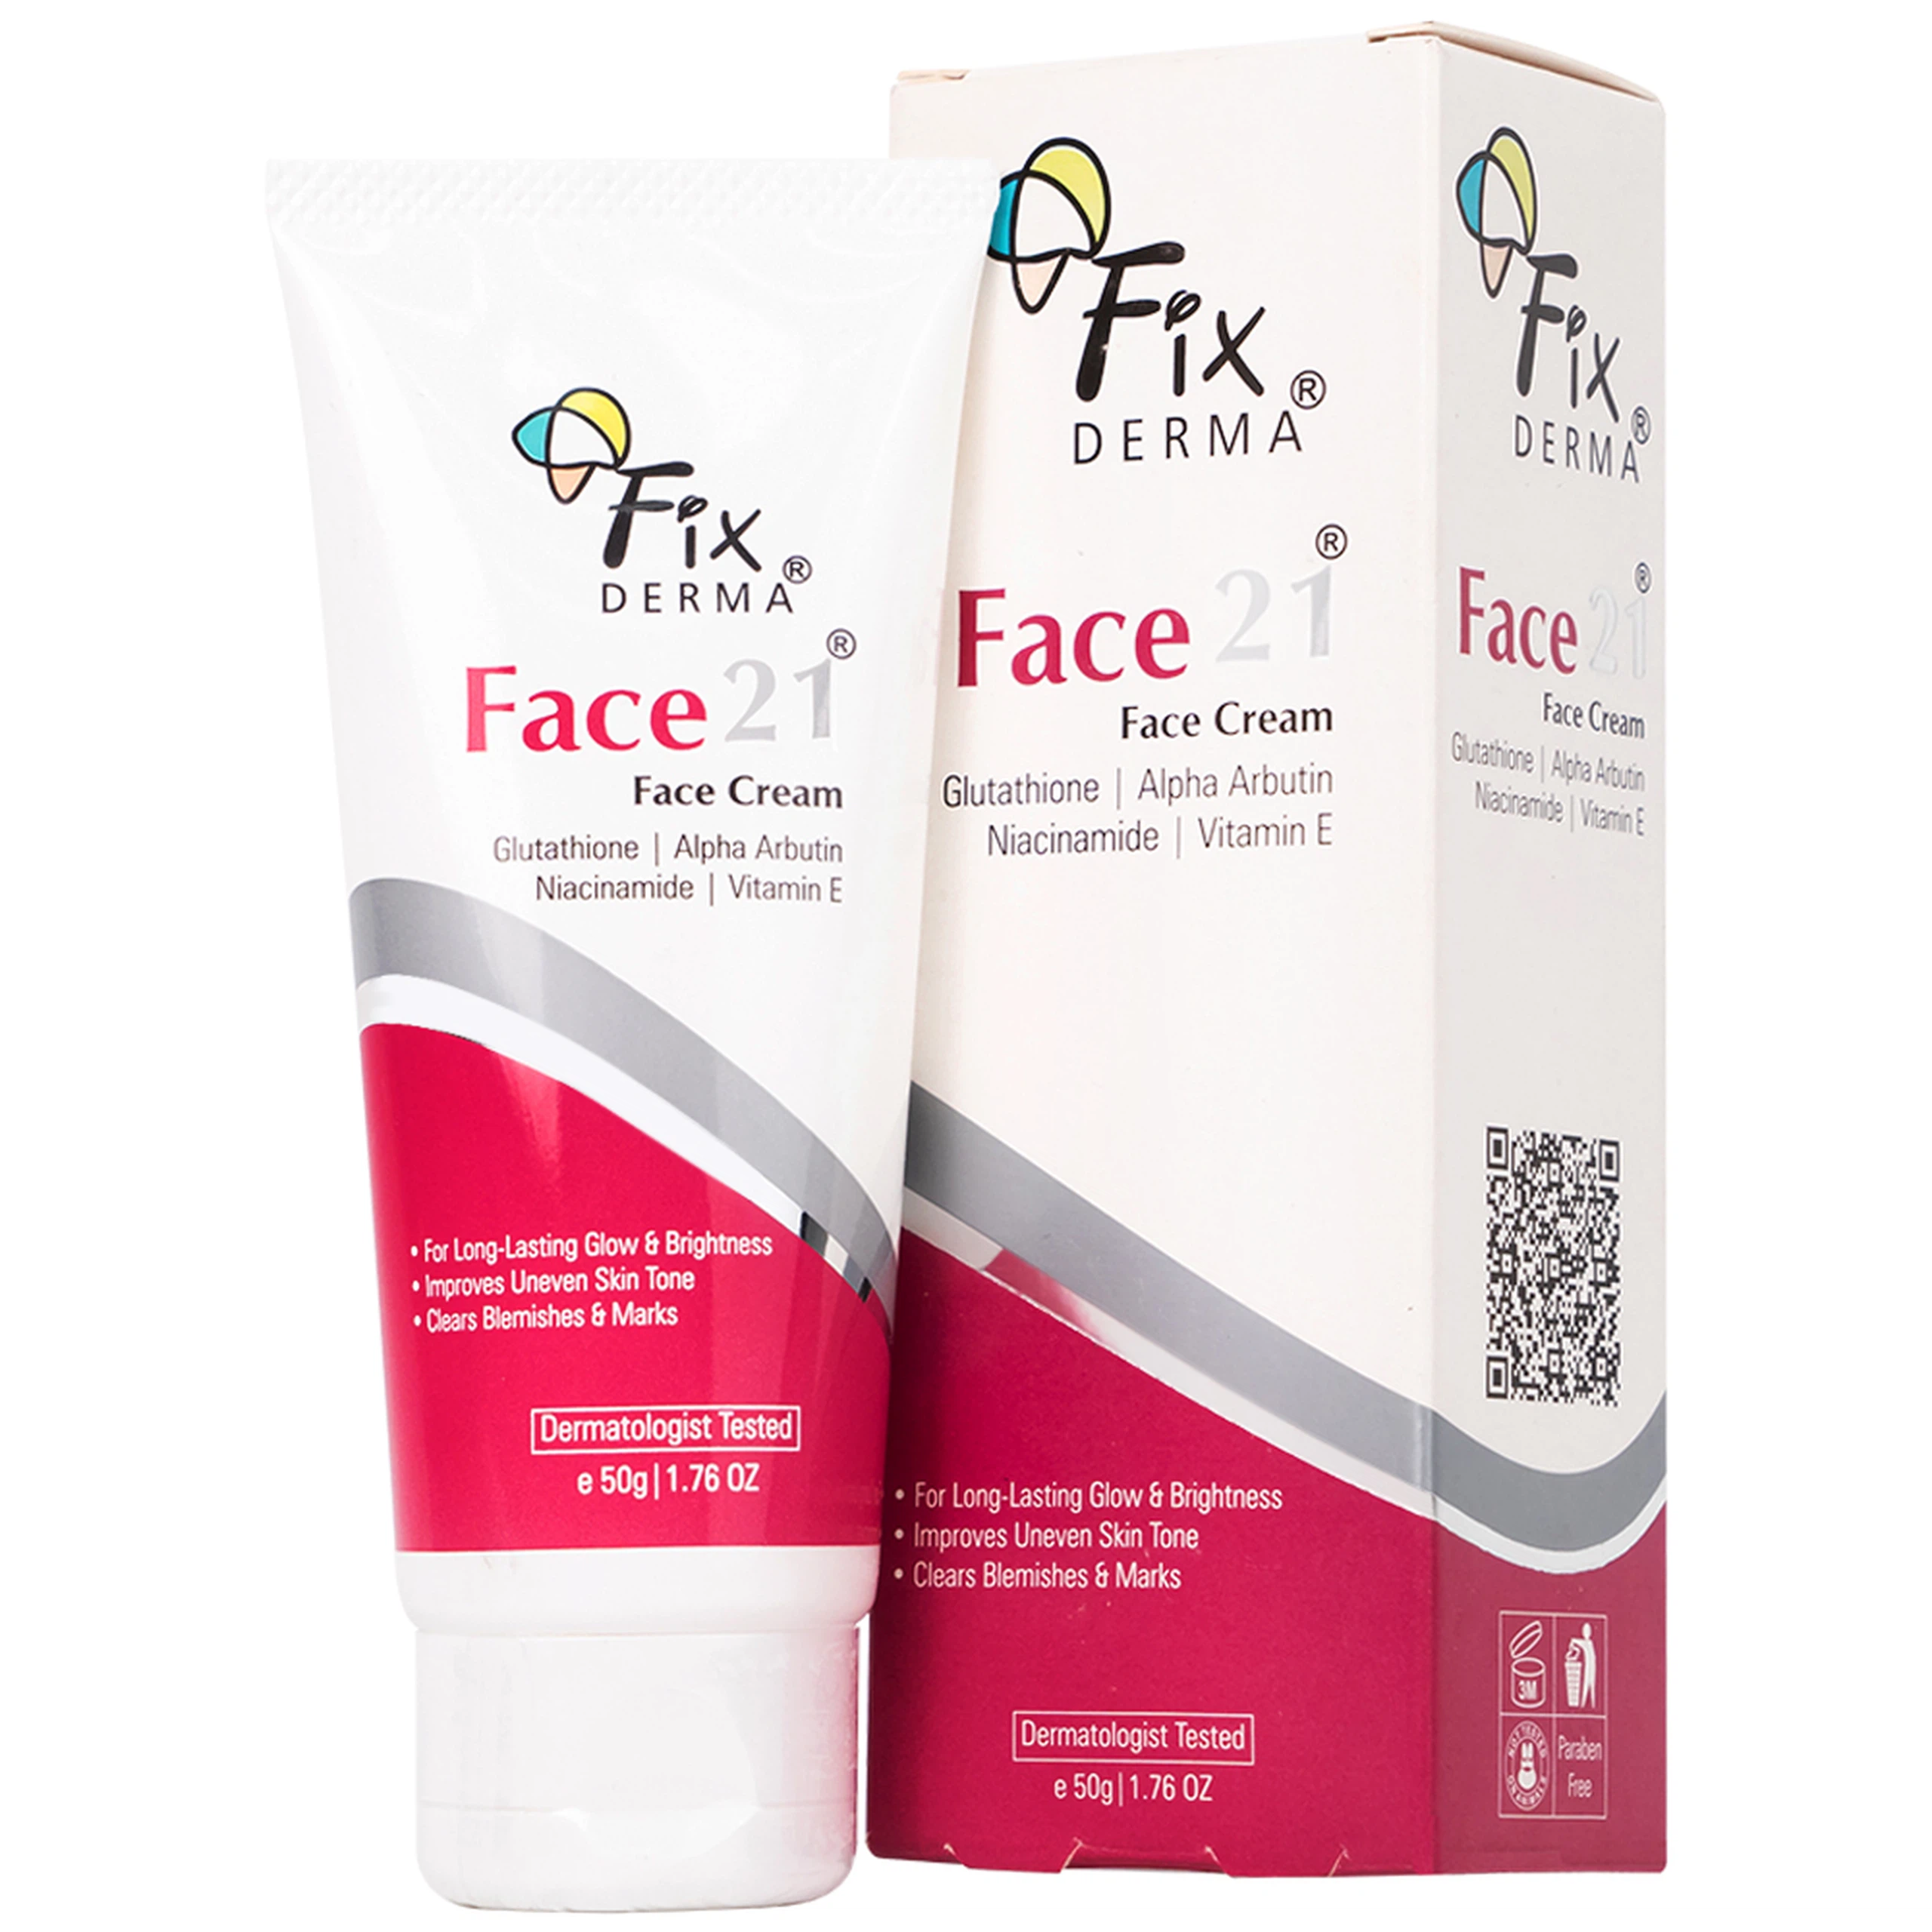 Kem dưỡng ẩm sáng da Fixderma Face21 Face Cream giúp da trắng sáng, mịn màng (50g)